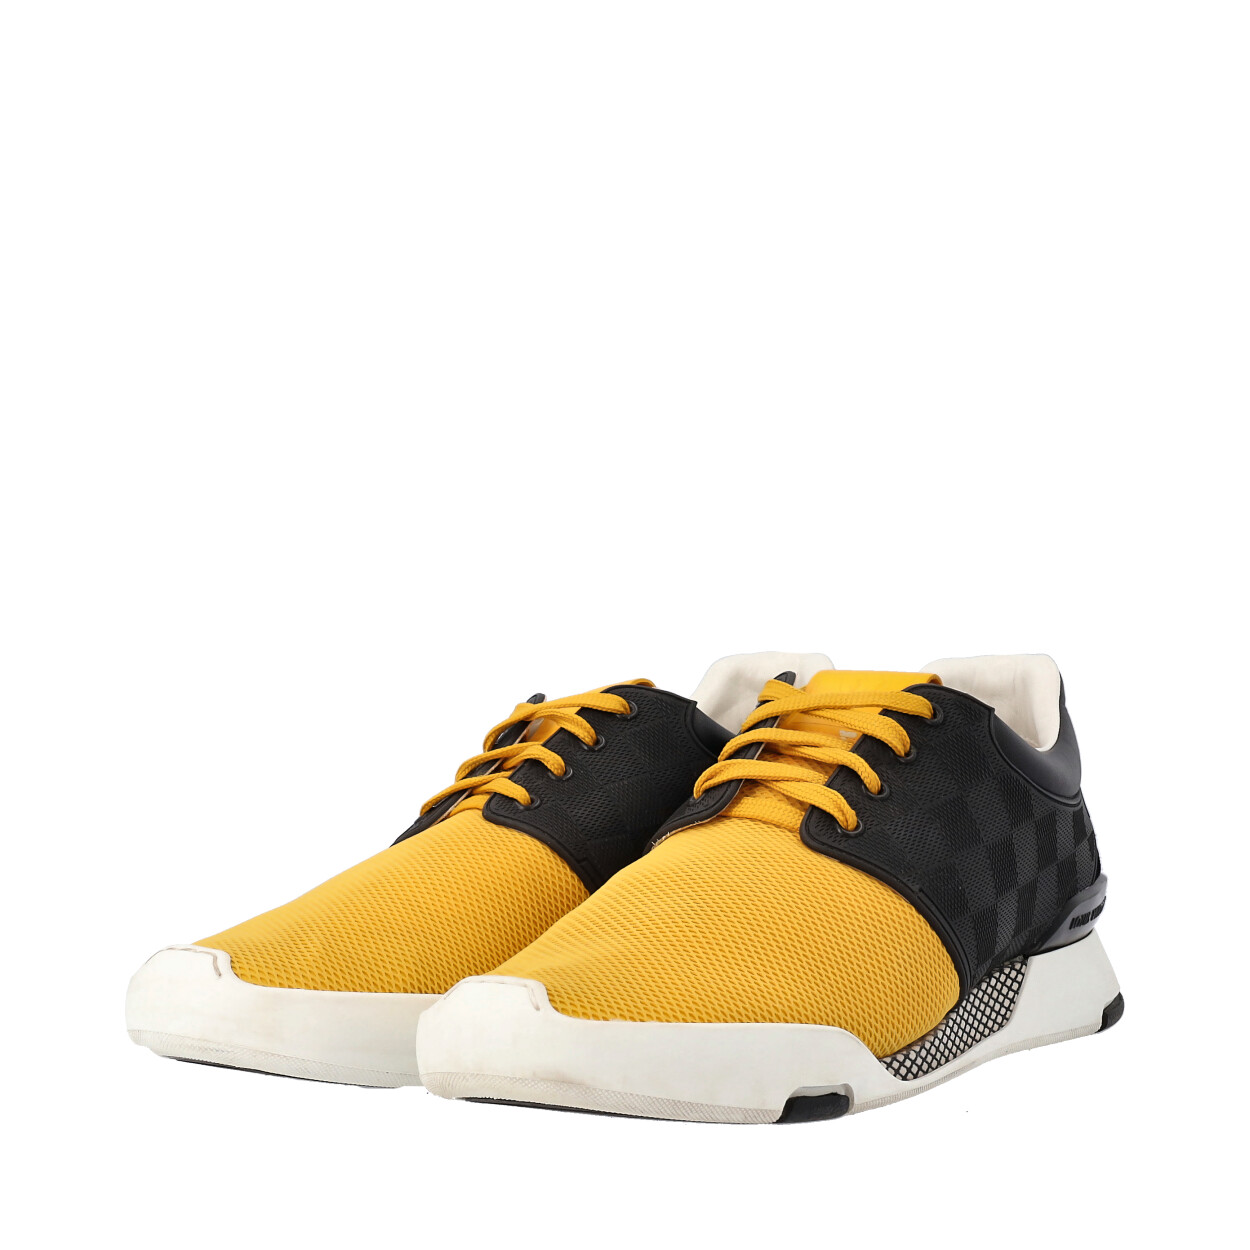 LOUIS VUITTON Damier Fastlane Sneakers Yellow/Black - S: 41 (7.5)